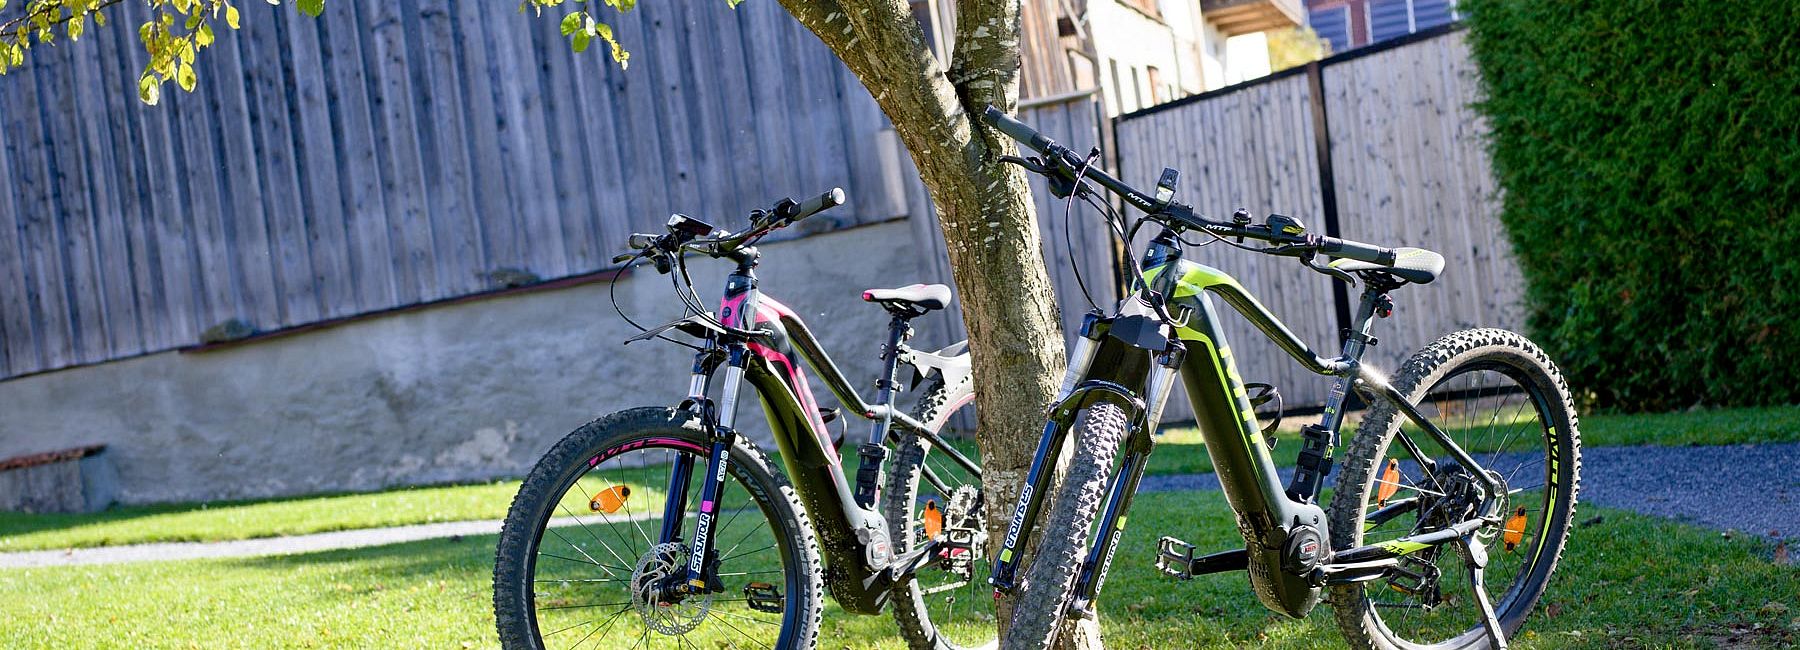 Zwei E-Bikes auf dem Rasen bei einem kleinen Baum in der Sonne mit Herbstlaub